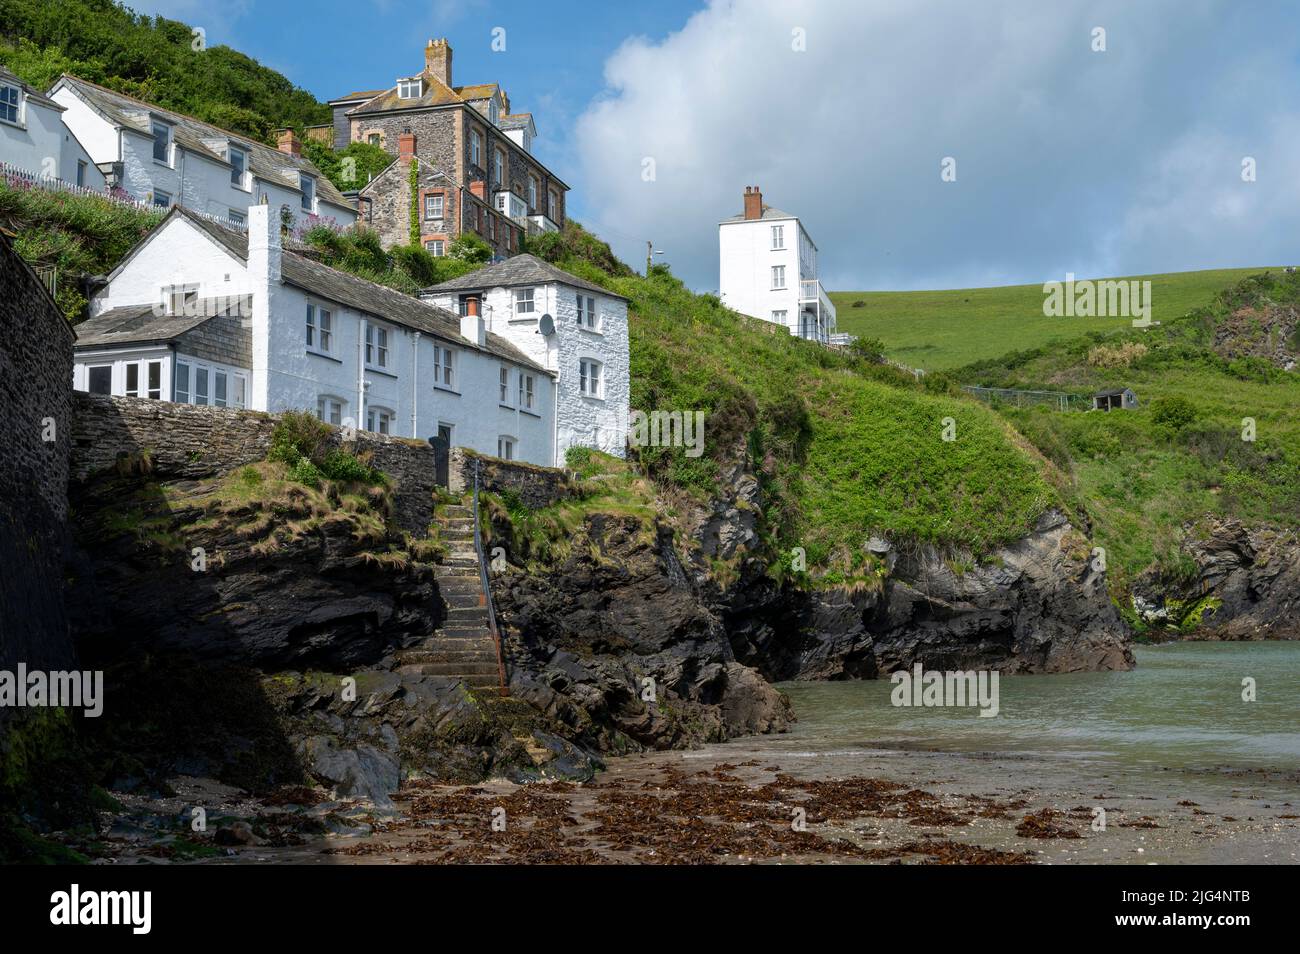 Il grazioso villaggio di pescatori di Port Isaac, Cornovaglia, Regno Unito, posizione della serie drammatica ITV Doc Martin. Foto Stock